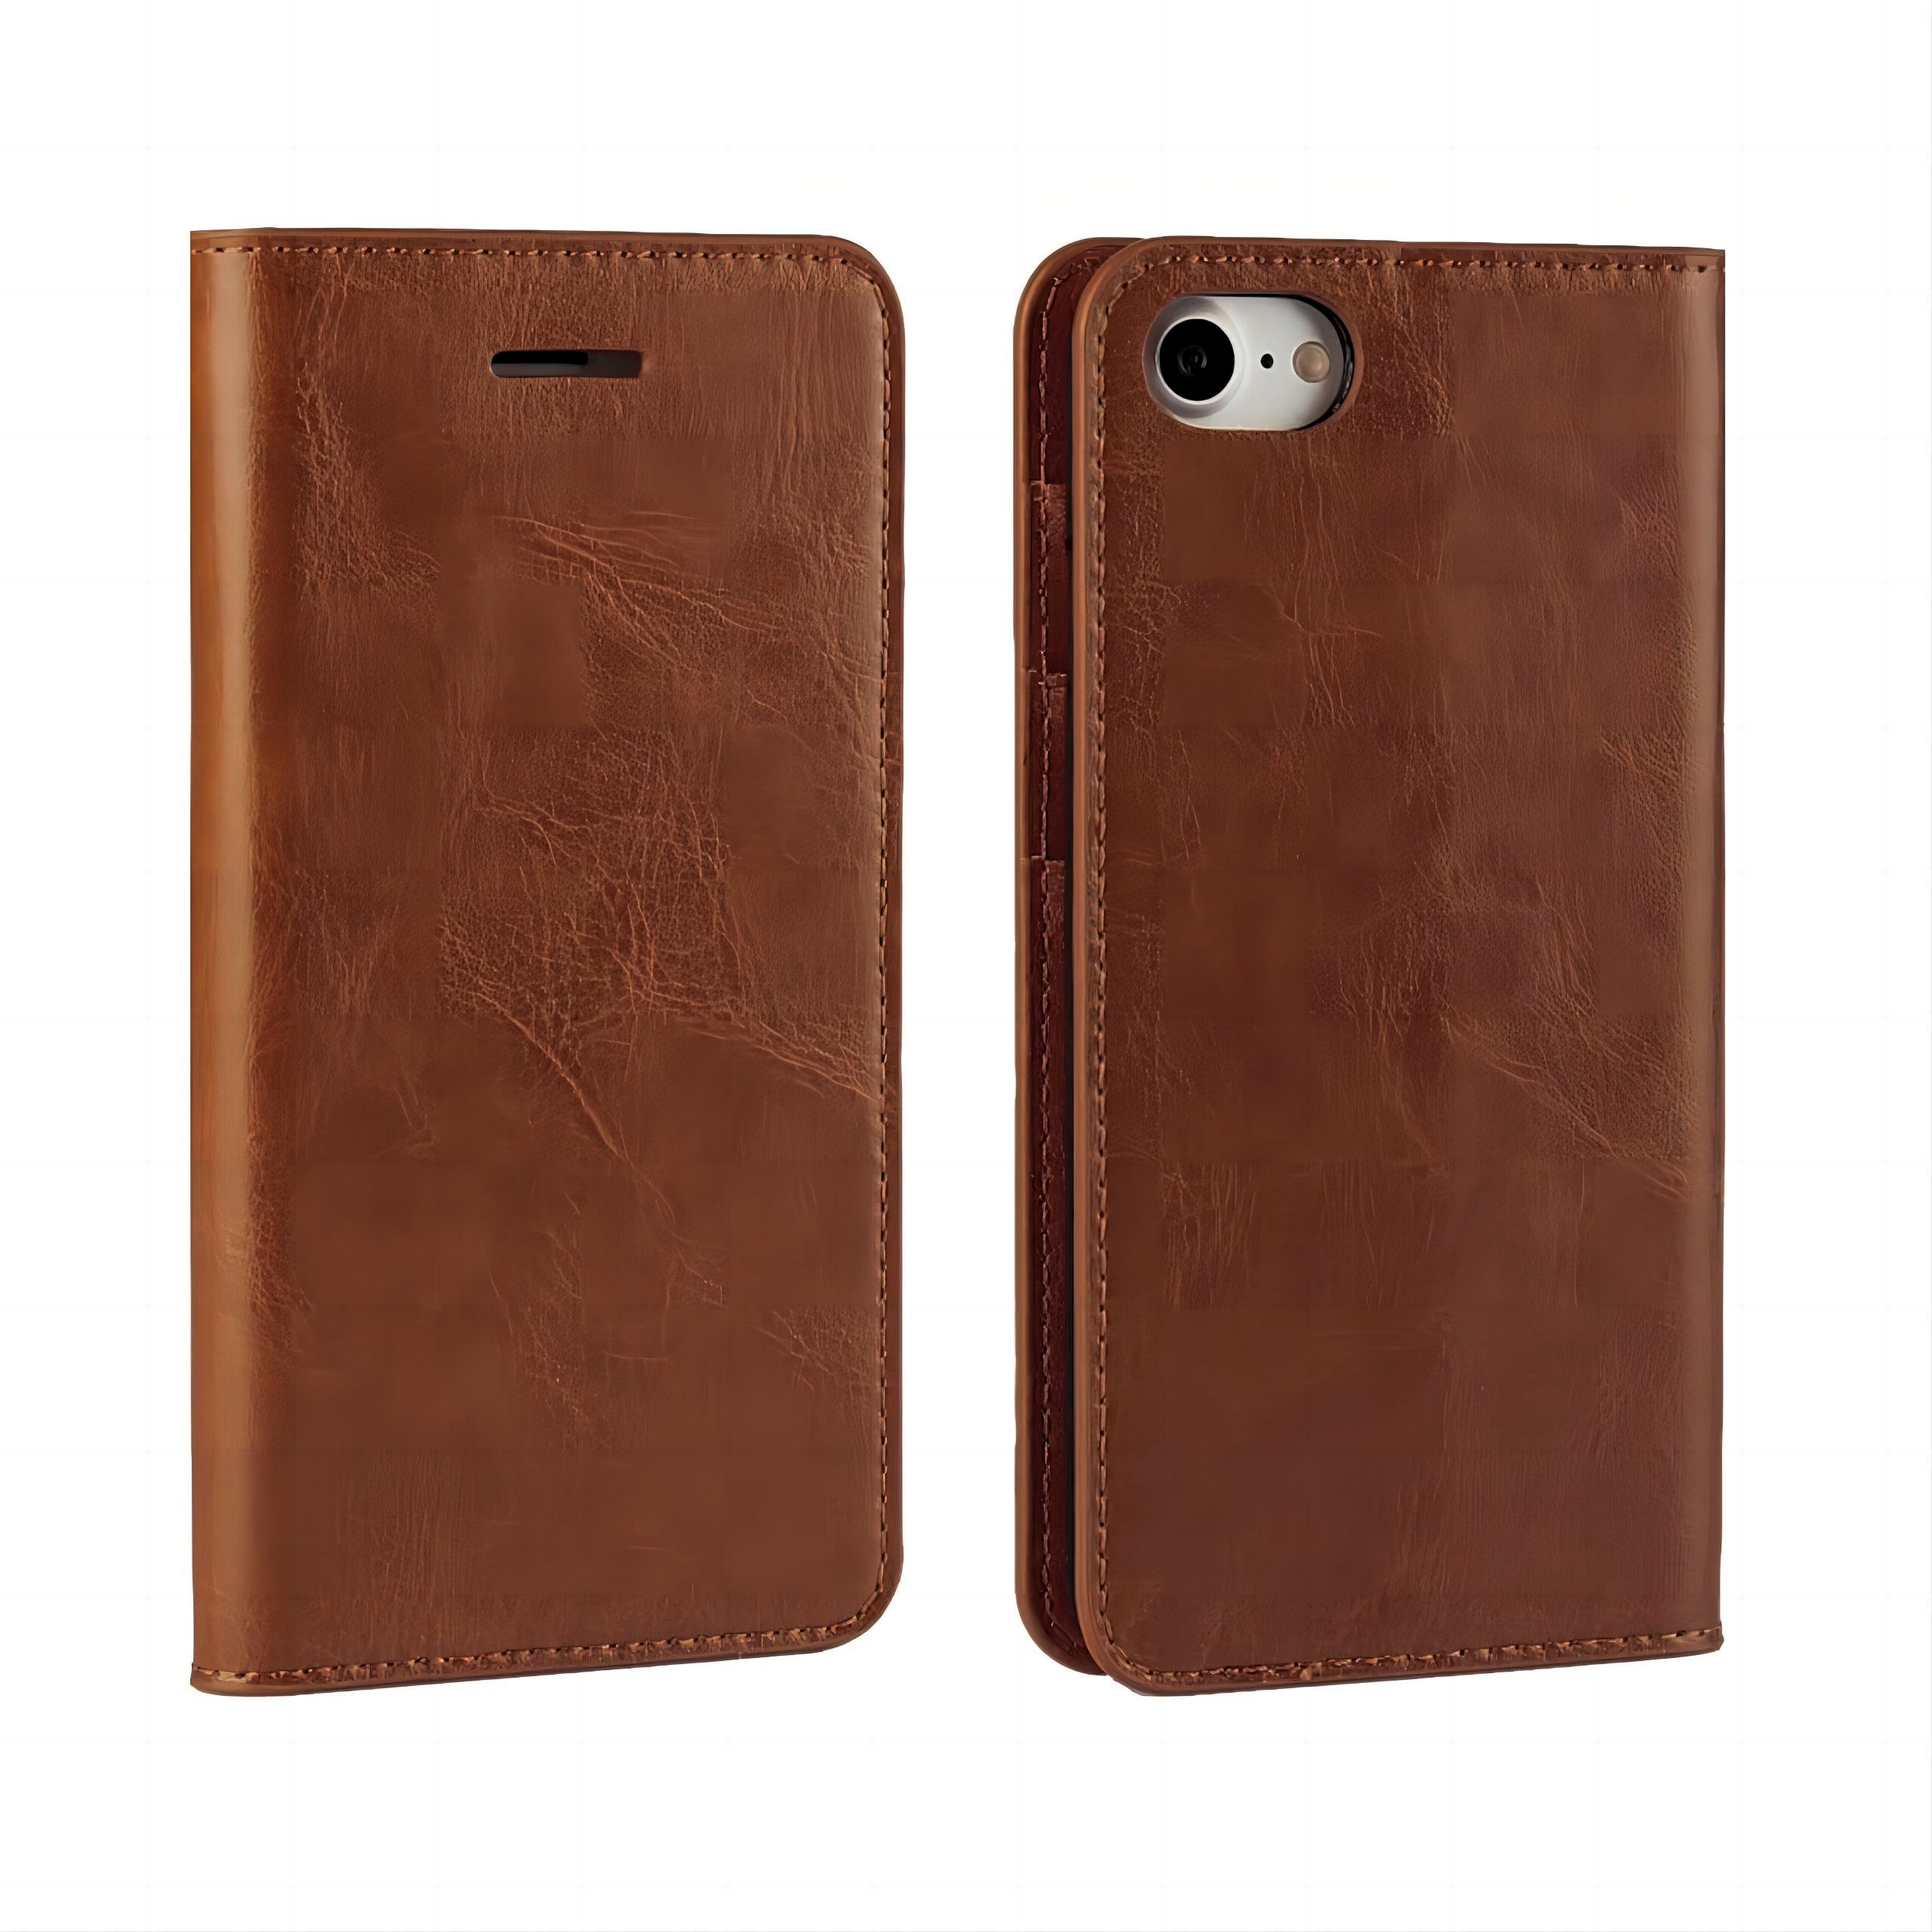 Funda cartera de cuero genuino iPhone 7 marrón